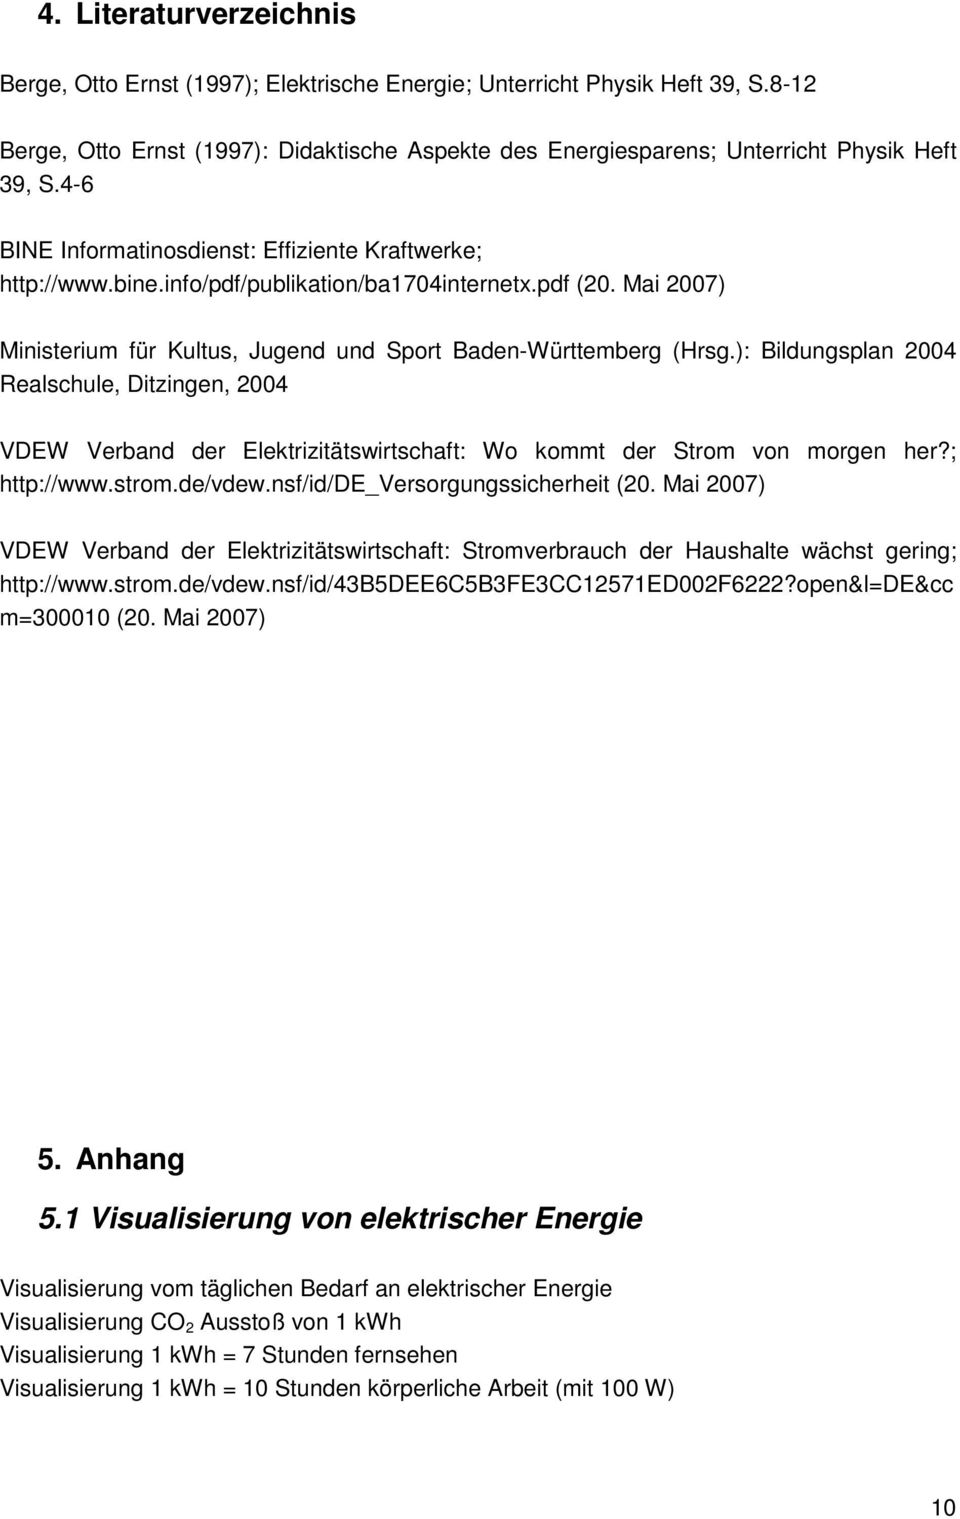 ): Bildungsplan 2004 Realschule, Ditzingen, 2004 VDEW Verband der Elektrizitätswirtschaft: Wo kommt der Strom von morgen her?; http://www.strom.de/vdew.nsf/id/de_versorgungssicherheit (20.